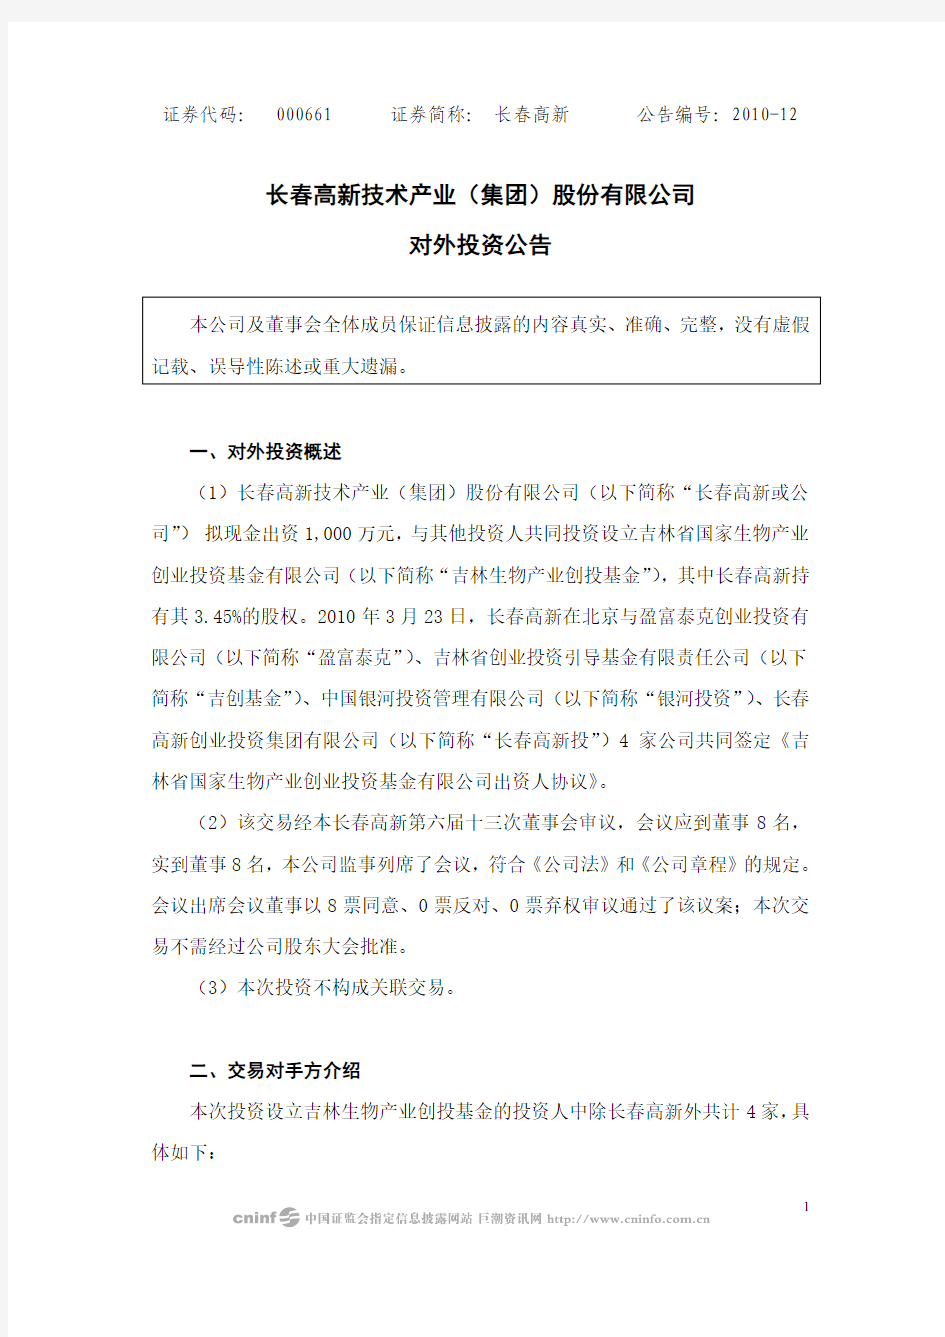 长春高新技术产业(集团)股份有限公司对外投资公告